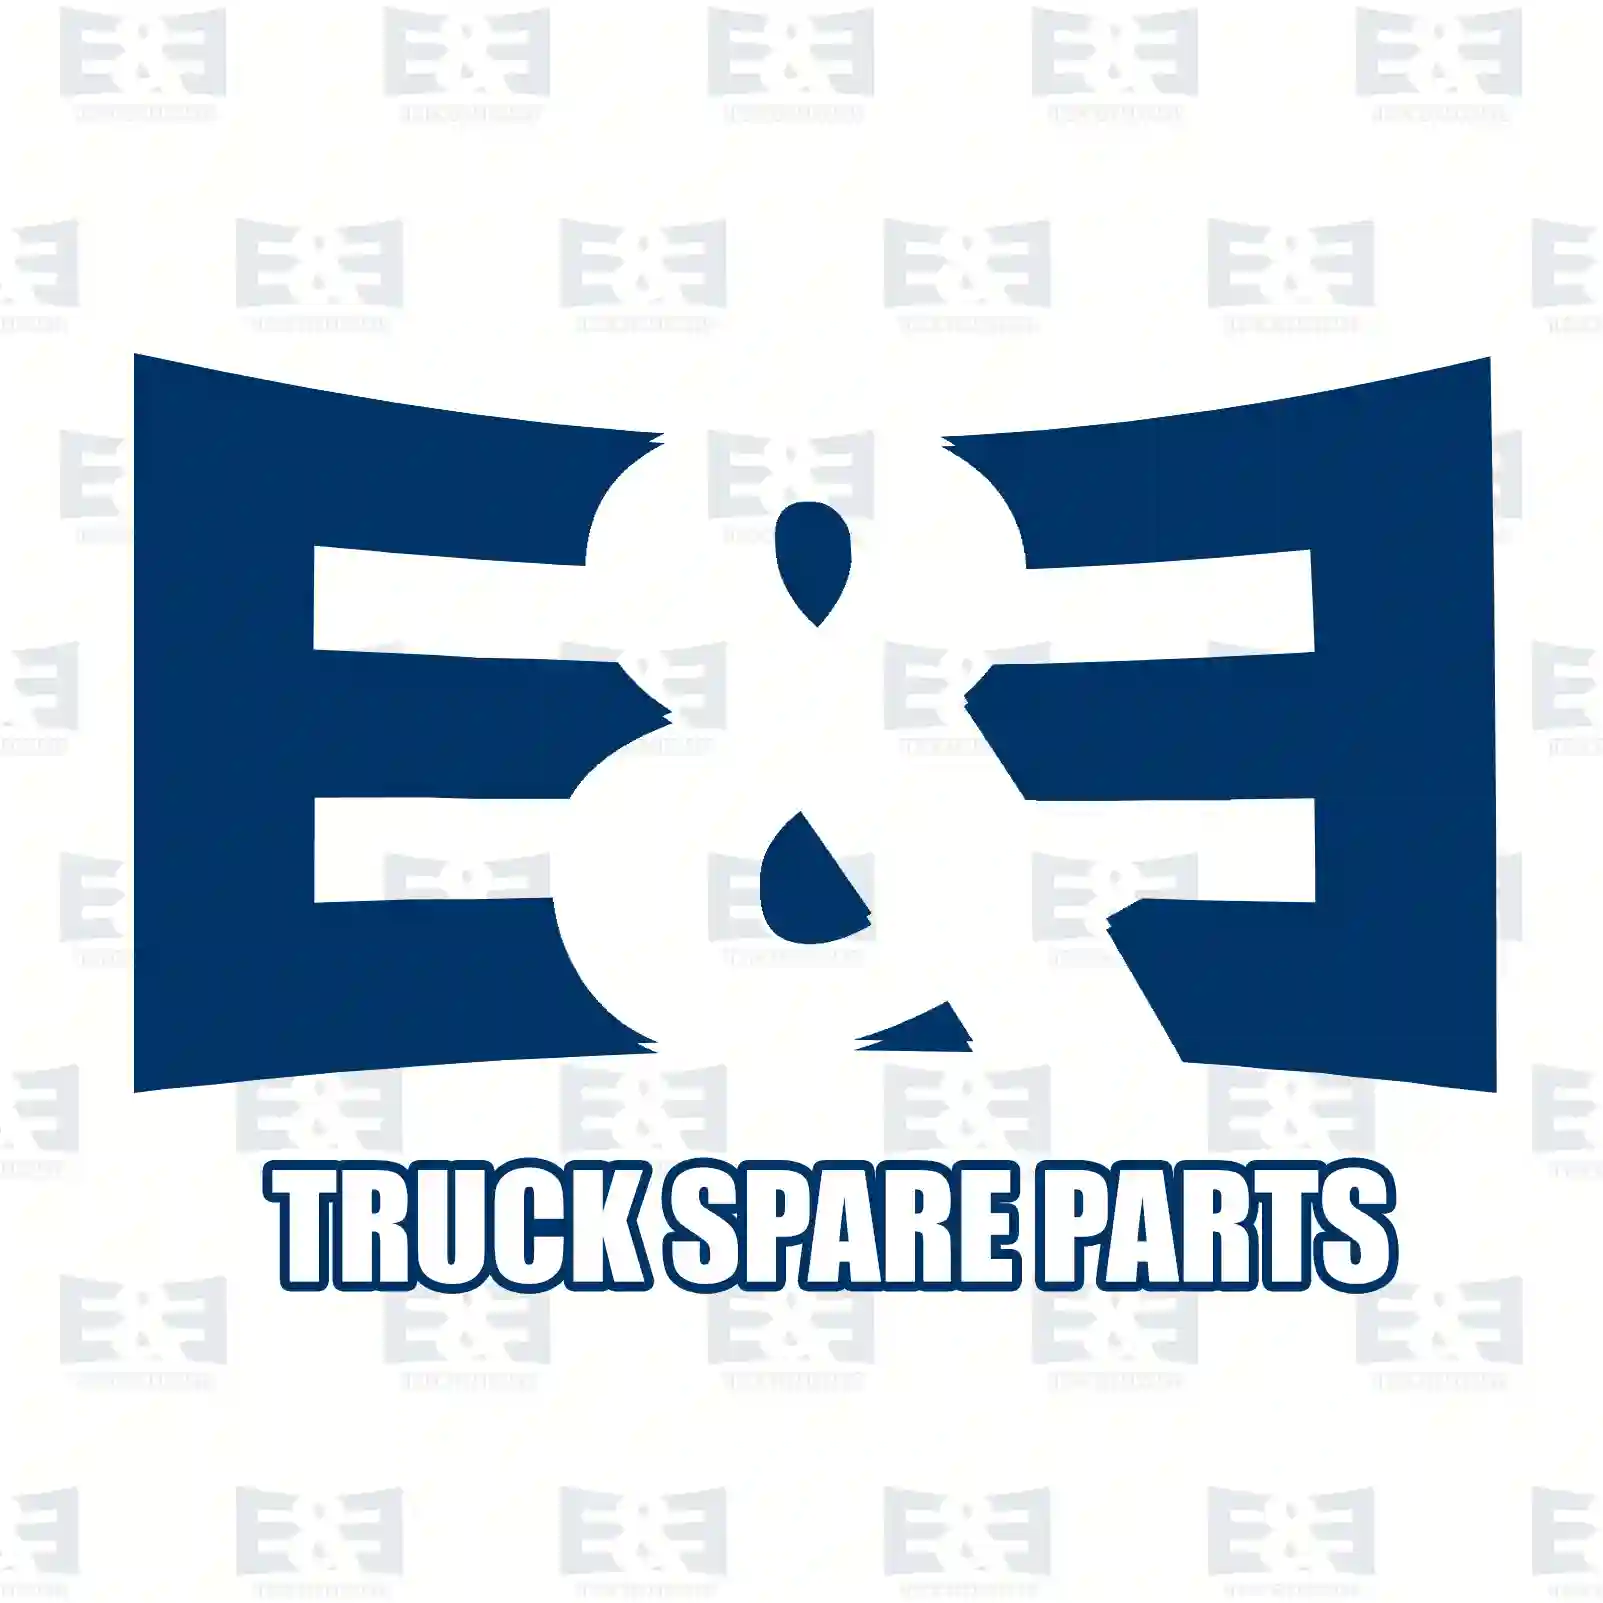 Solenoid coil, fuel valve, 2E2277339, 3098354, 1799375, ZG02104-0008 ||  2E2277339 E&E Truck Spare Parts | Truck Spare Parts, Auotomotive Spare Parts Solenoid coil, fuel valve, 2E2277339, 3098354, 1799375, ZG02104-0008 ||  2E2277339 E&E Truck Spare Parts | Truck Spare Parts, Auotomotive Spare Parts